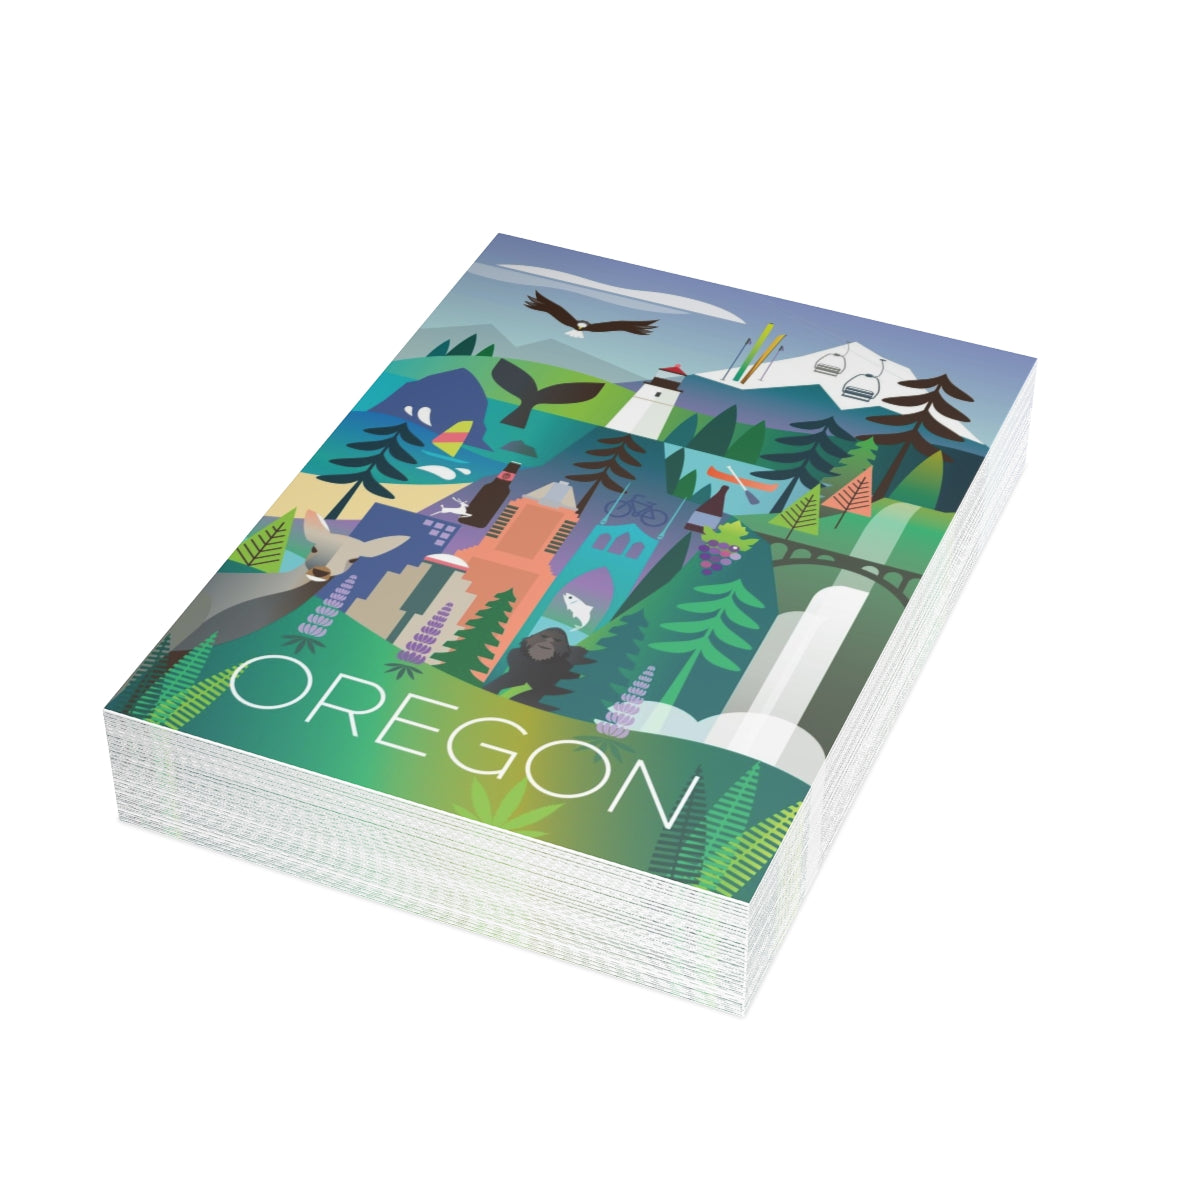 Oregon gefaltete matte Notizkarten + Umschläge (10 Stück)